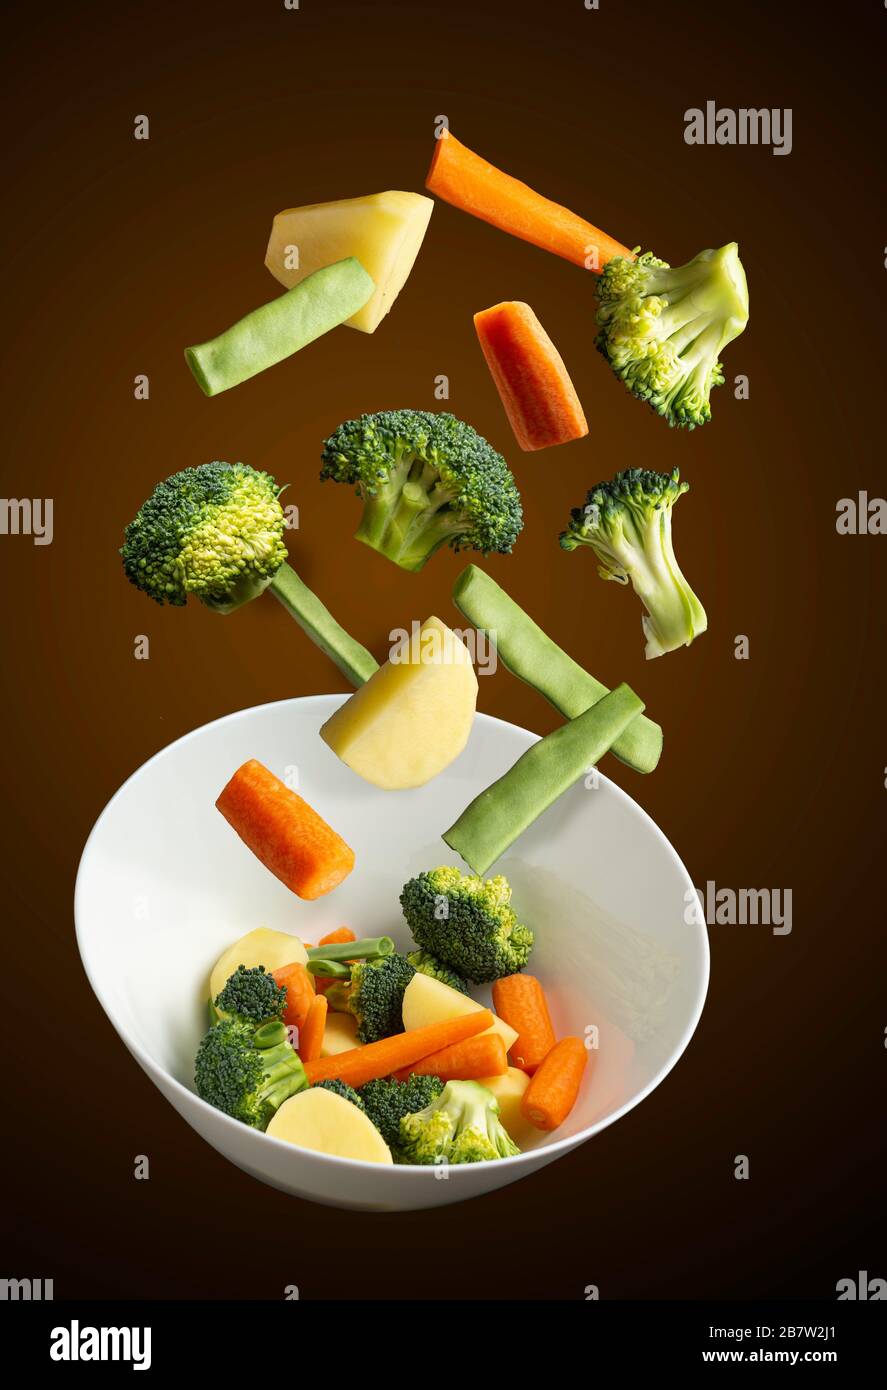 Gekochtes Gemüse auf schwarzem Grund, grüne Bohne, Brokkoli, Kartoffel Stockfoto